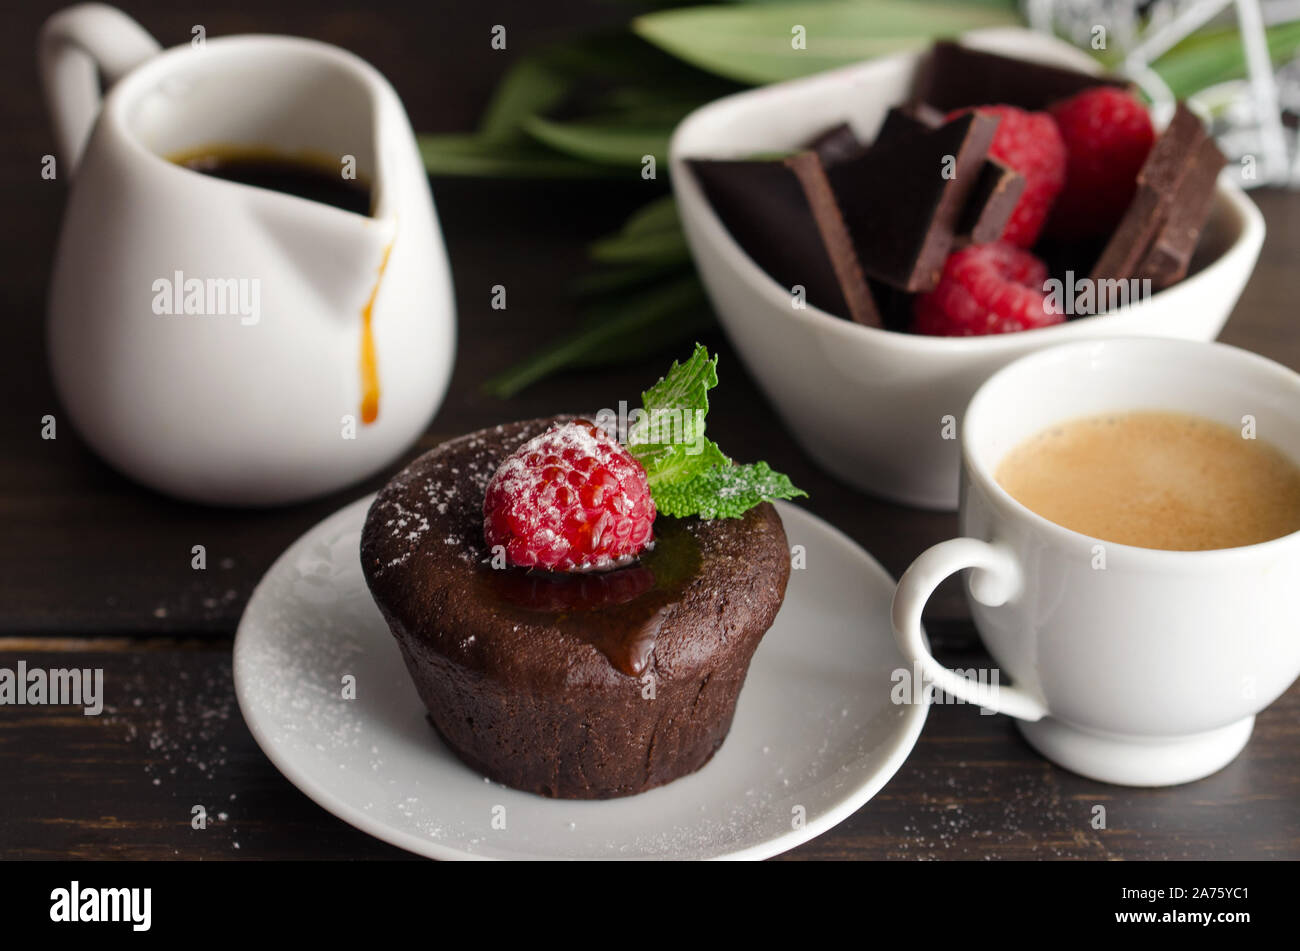 Coulant ou fondant au chocolat à la framboise, menthe et sucre en poudre. Délicieux dessert français Banque D'Images